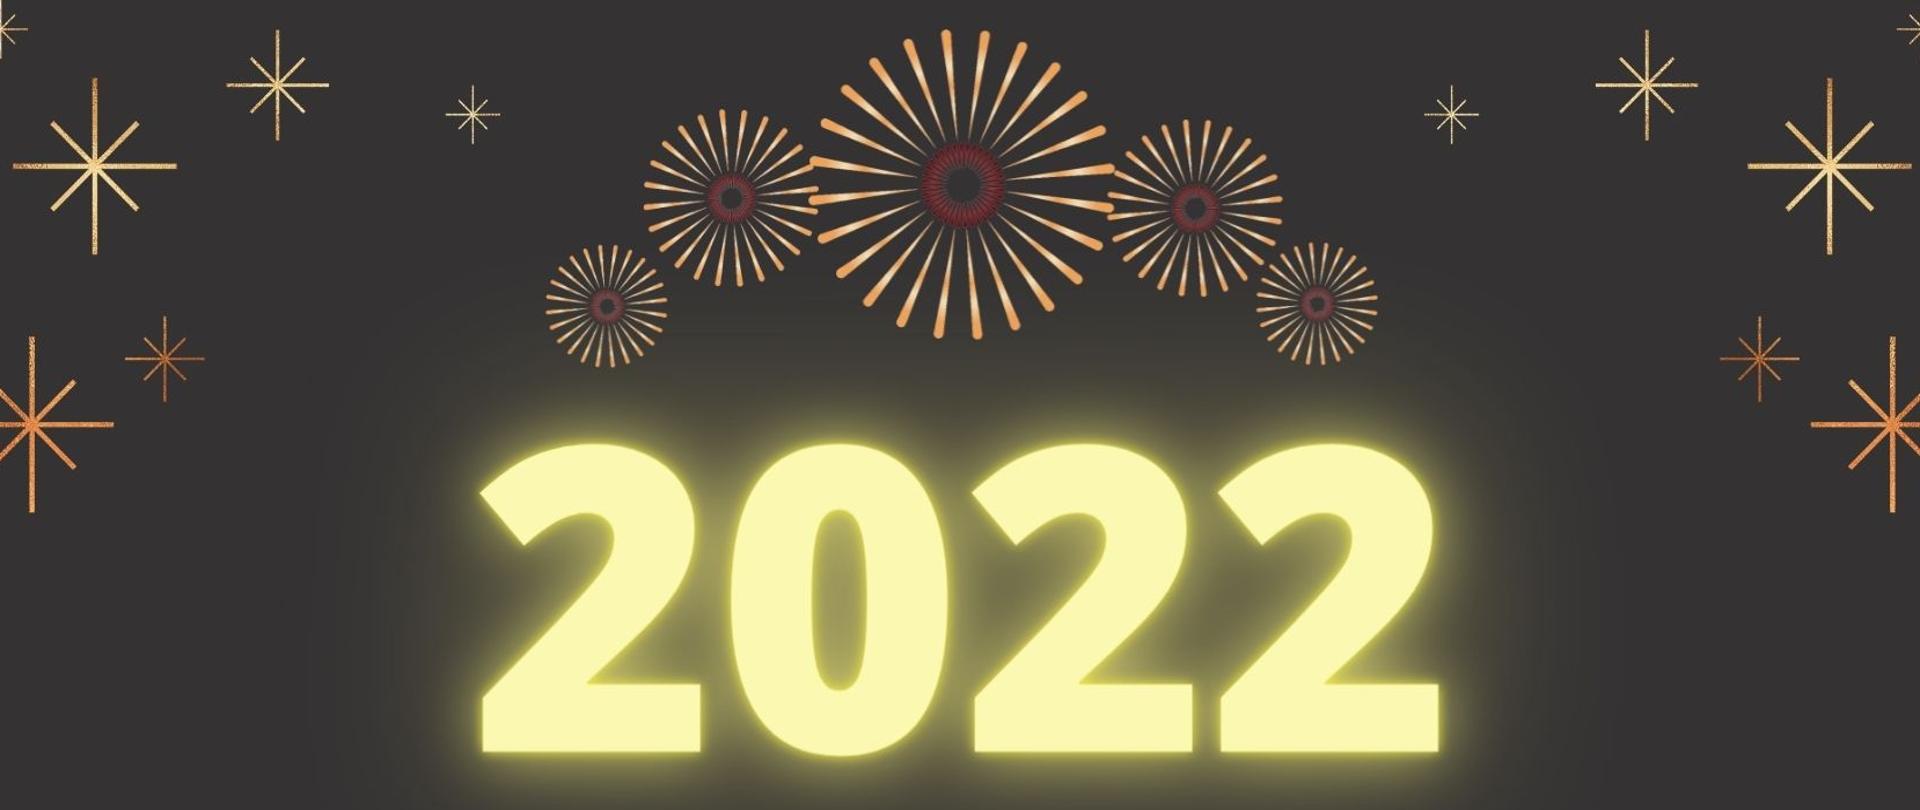 20211231 - Życzenia noworoczne